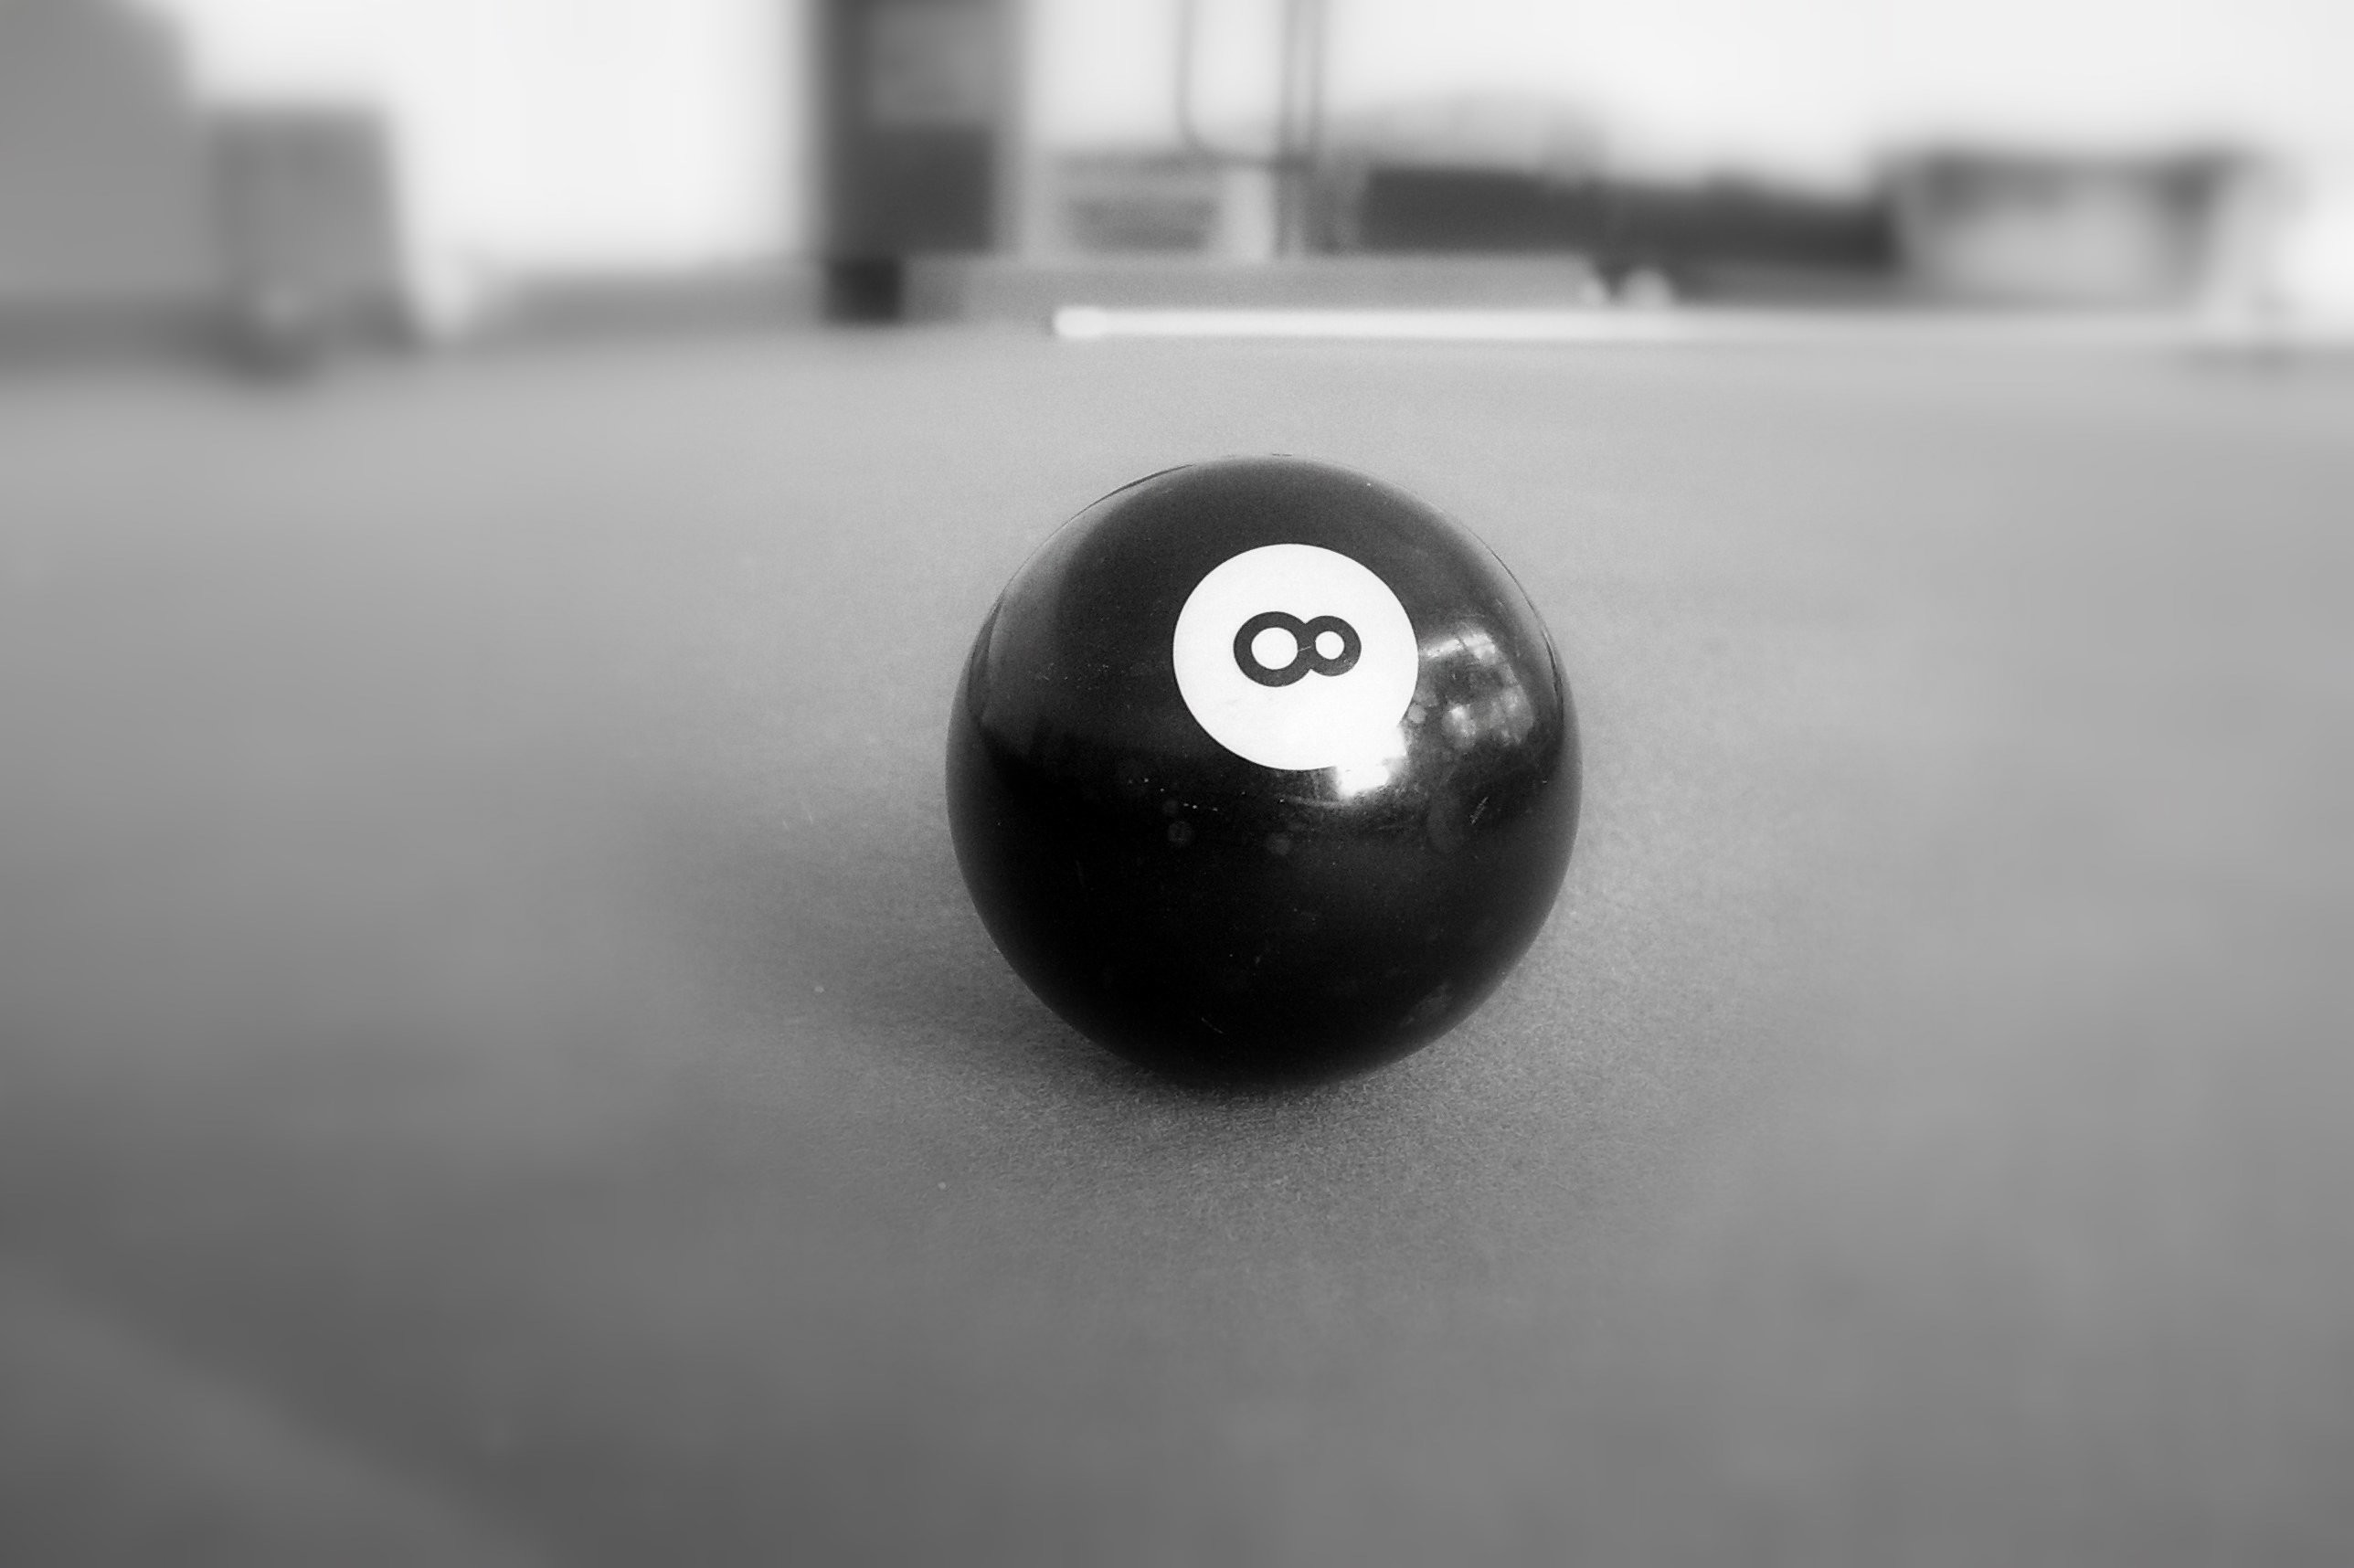 2576x1716 File:Pool billiards 8-ball, b-w.jpg